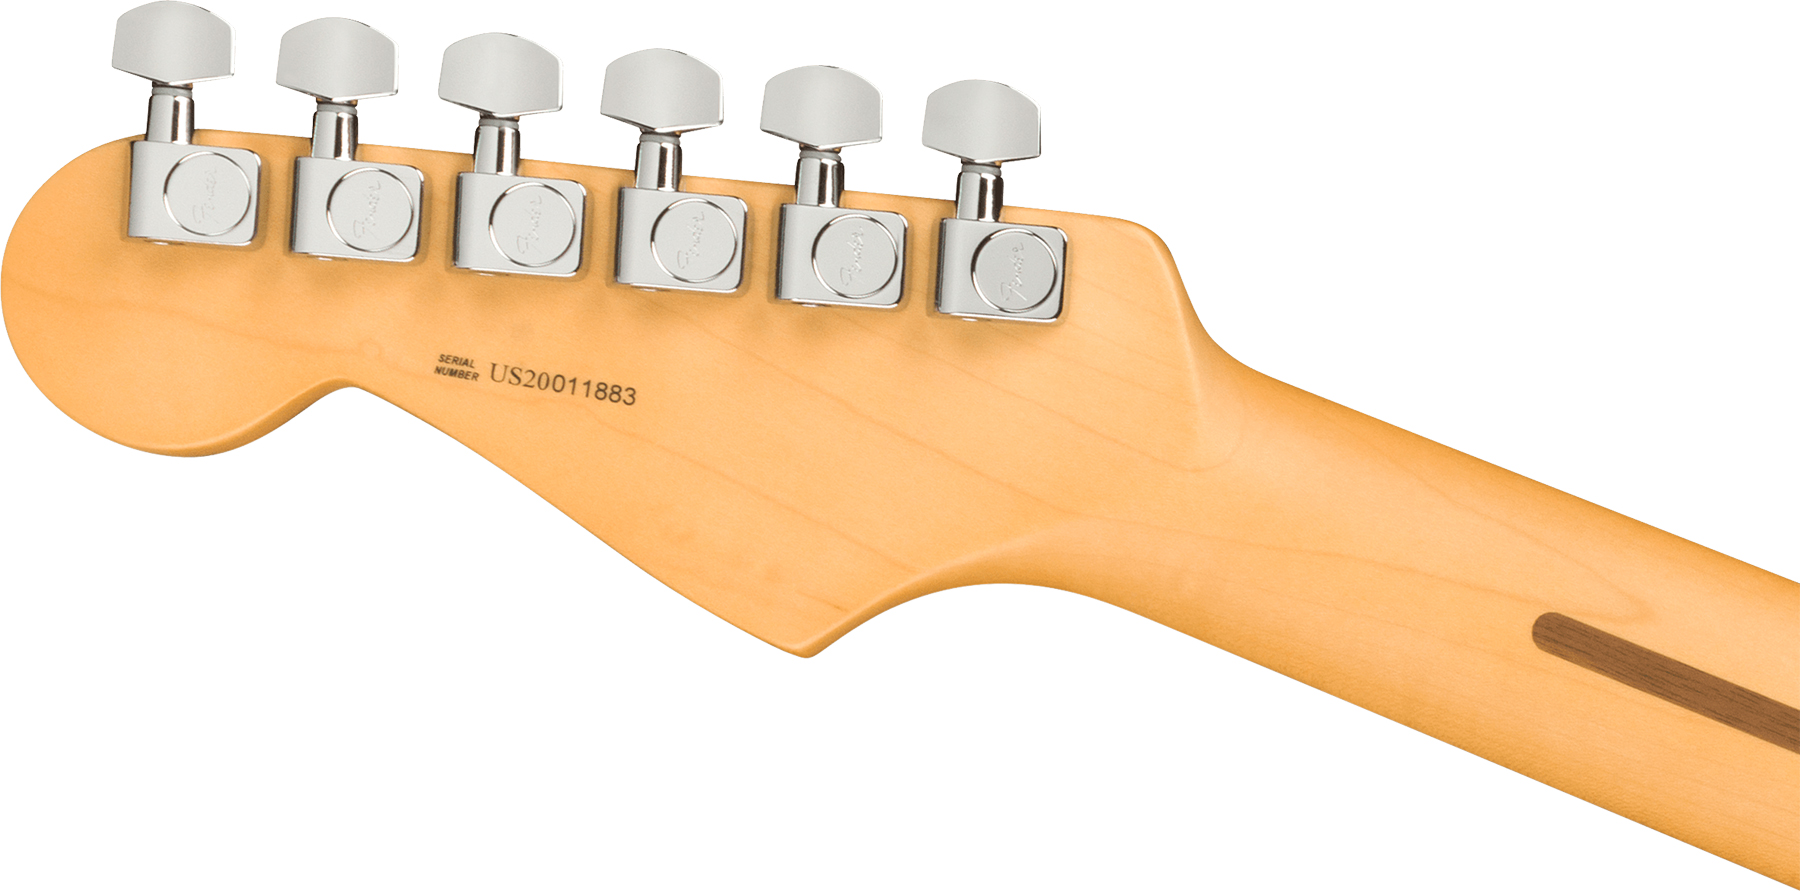 Fender Strat American Professional Ii Hss Usa Mn - 3-color Sunburst - E-Gitarre in Str-Form - Variation 3